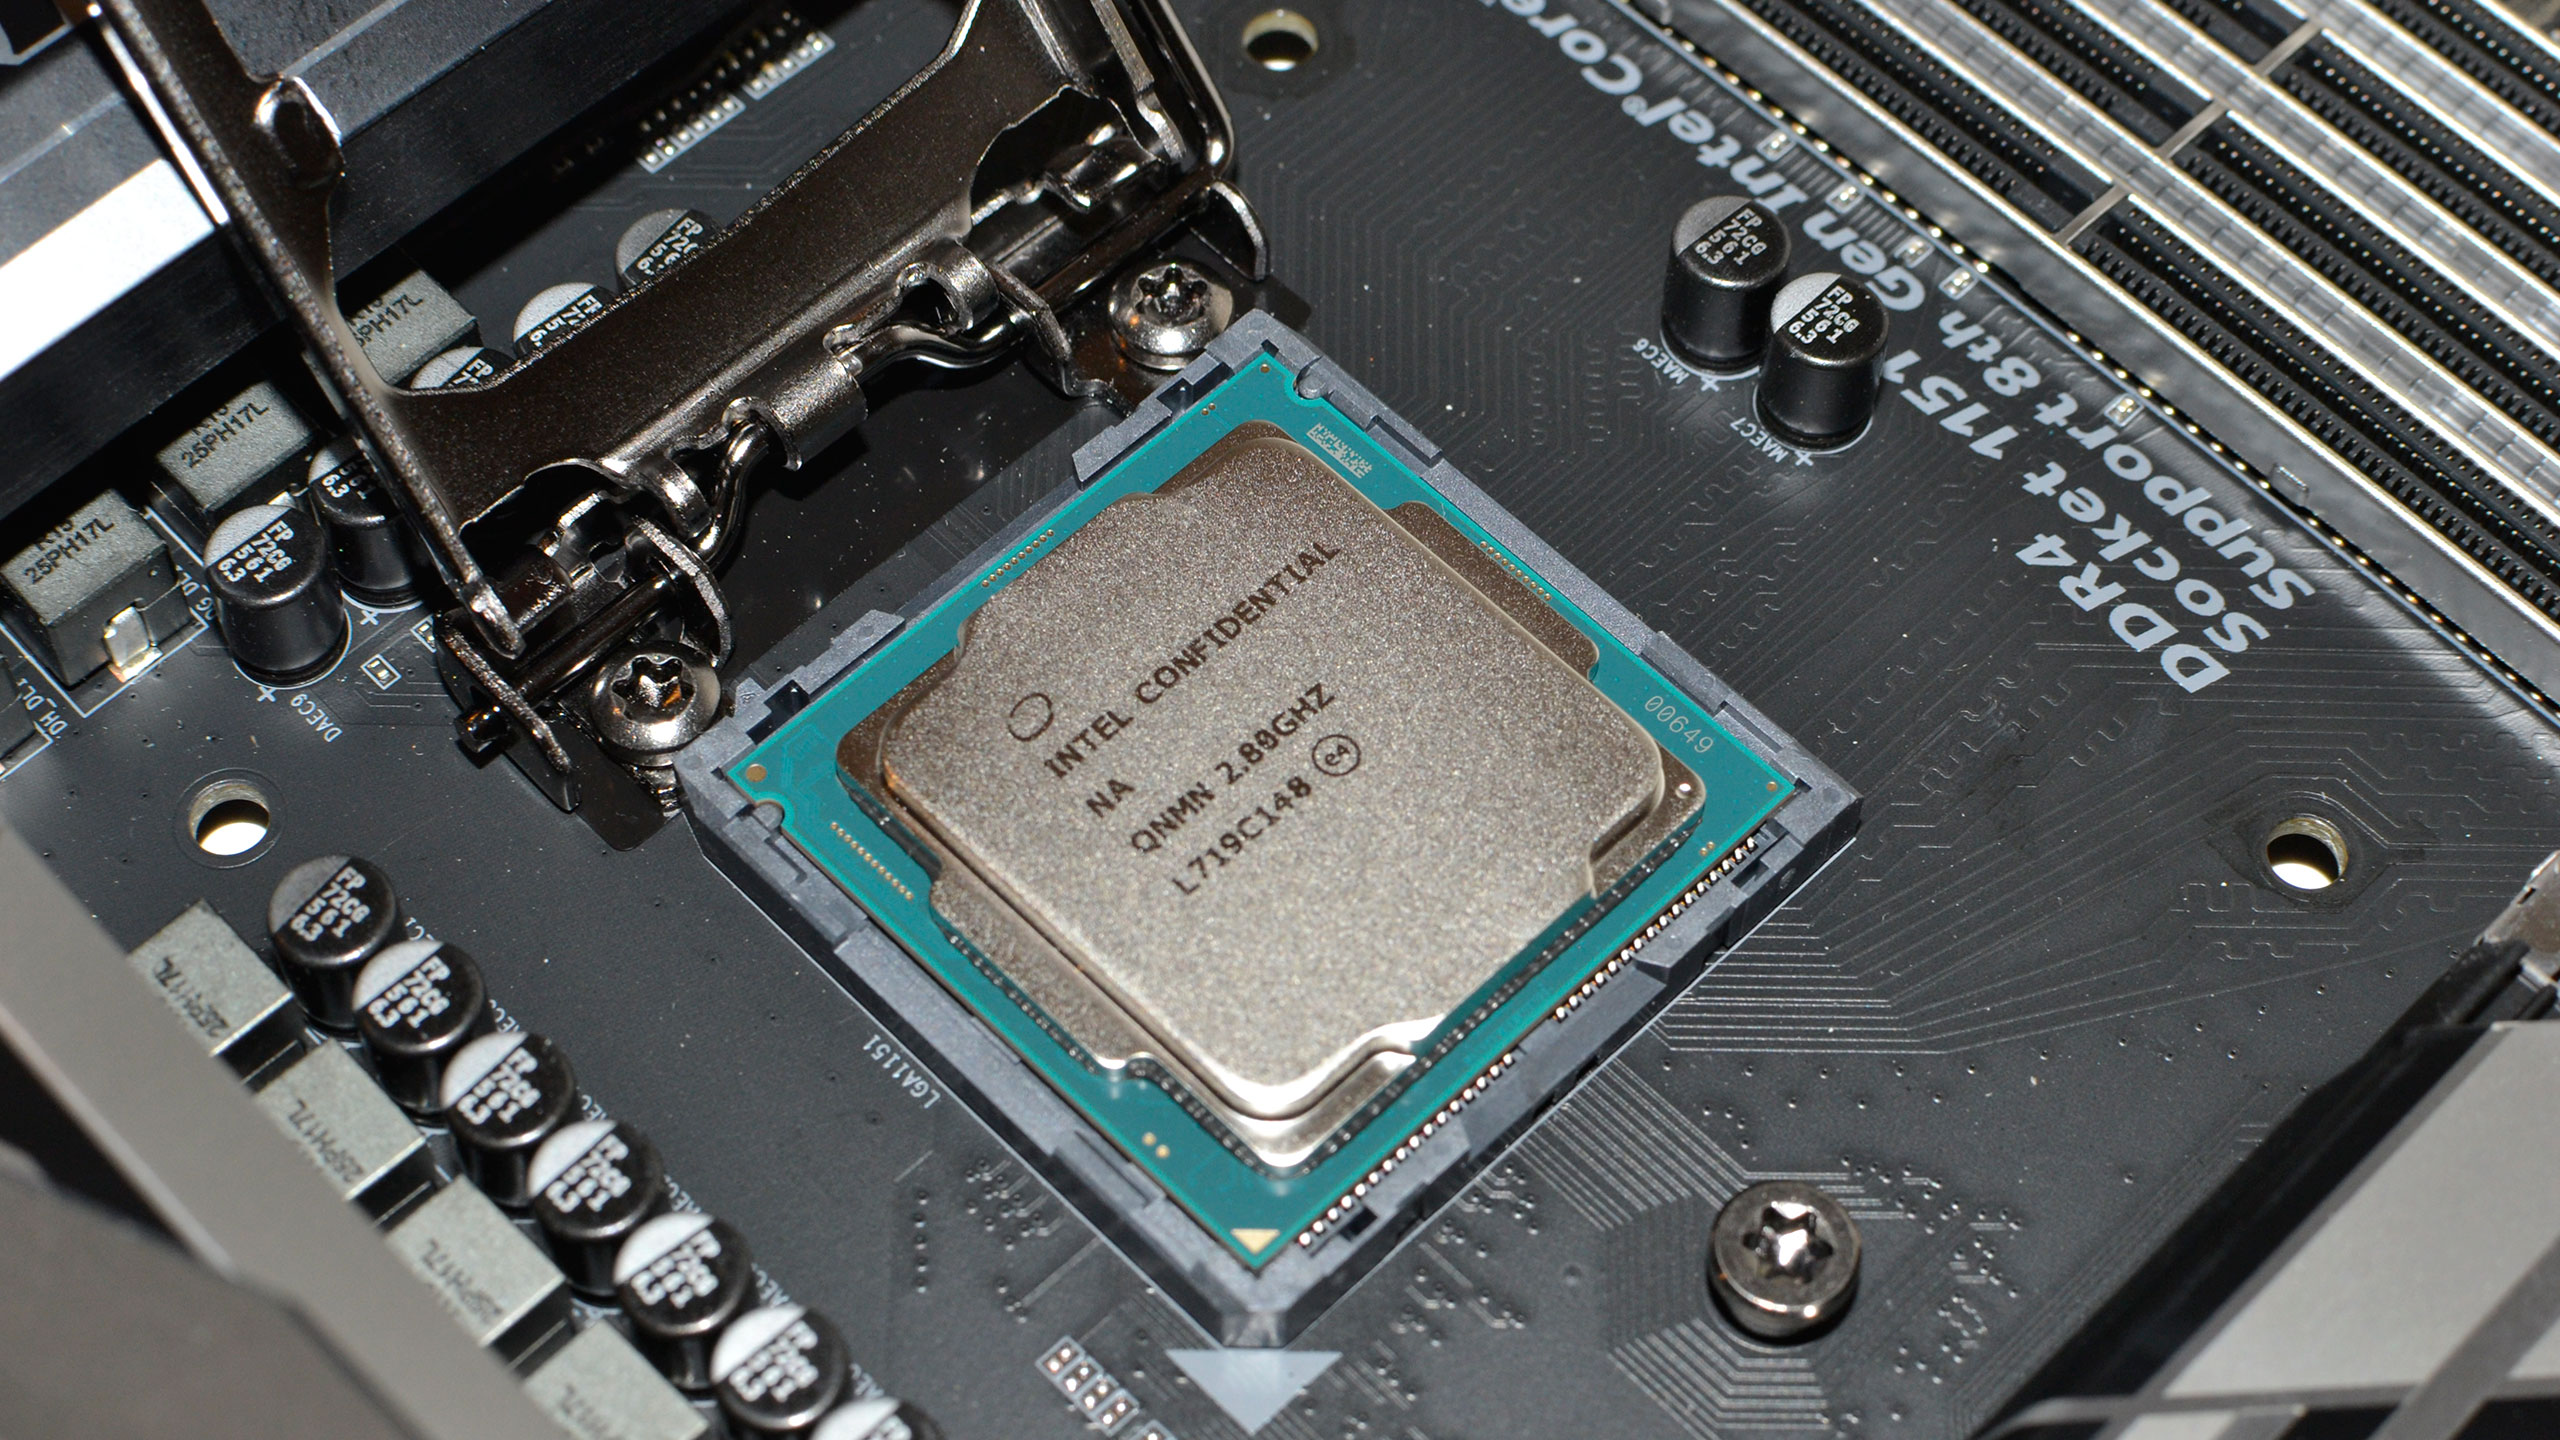 8. Intel Core i5-8400 Desktop Processor